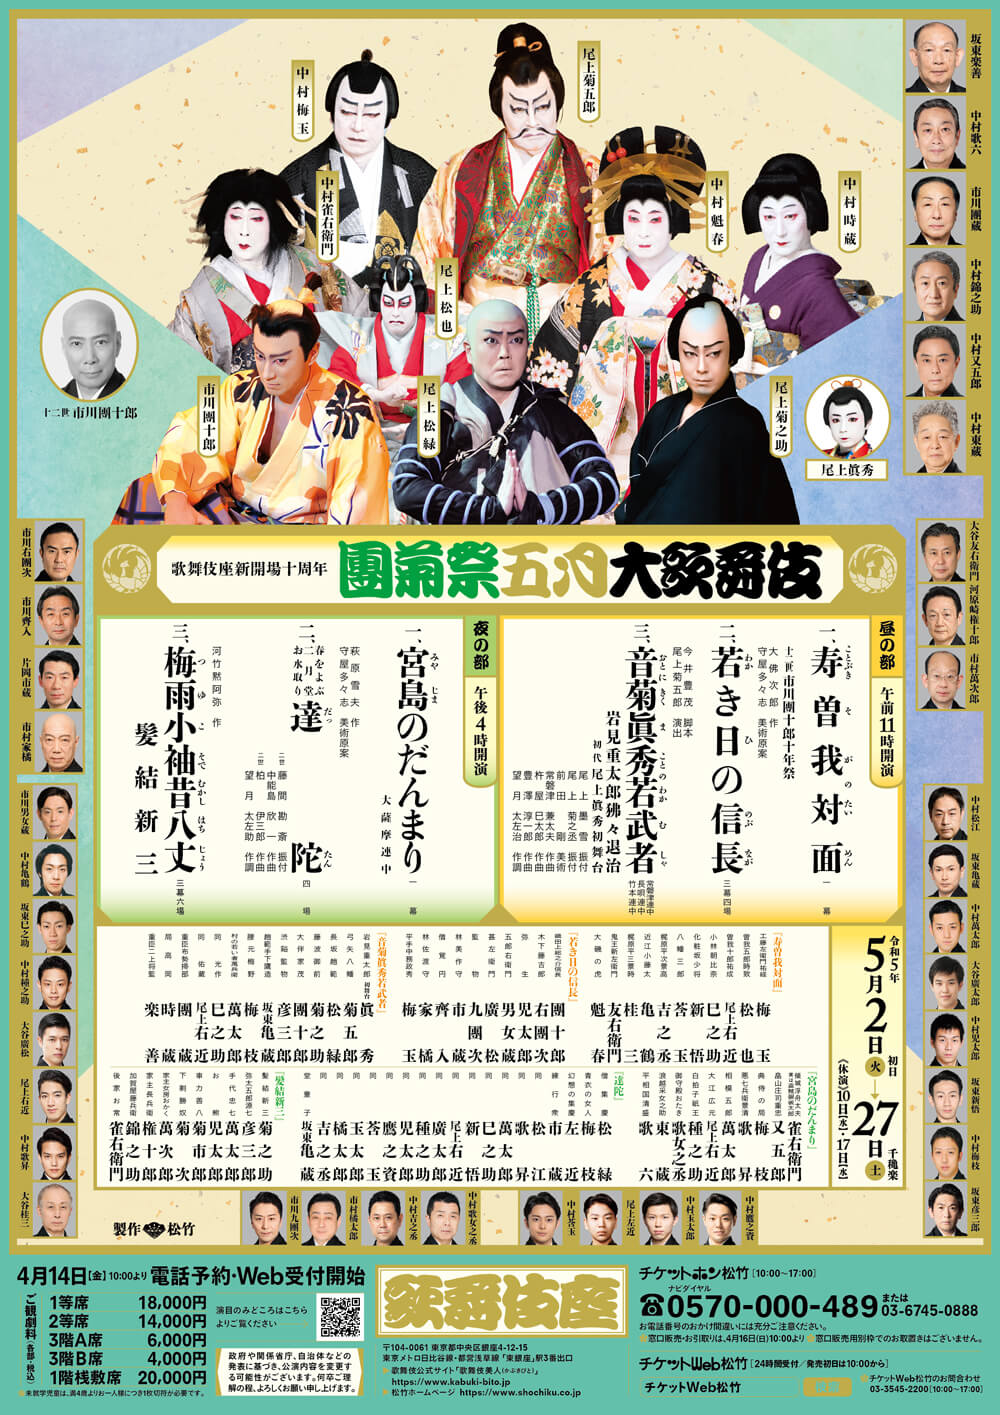 May Program at the kabukiza